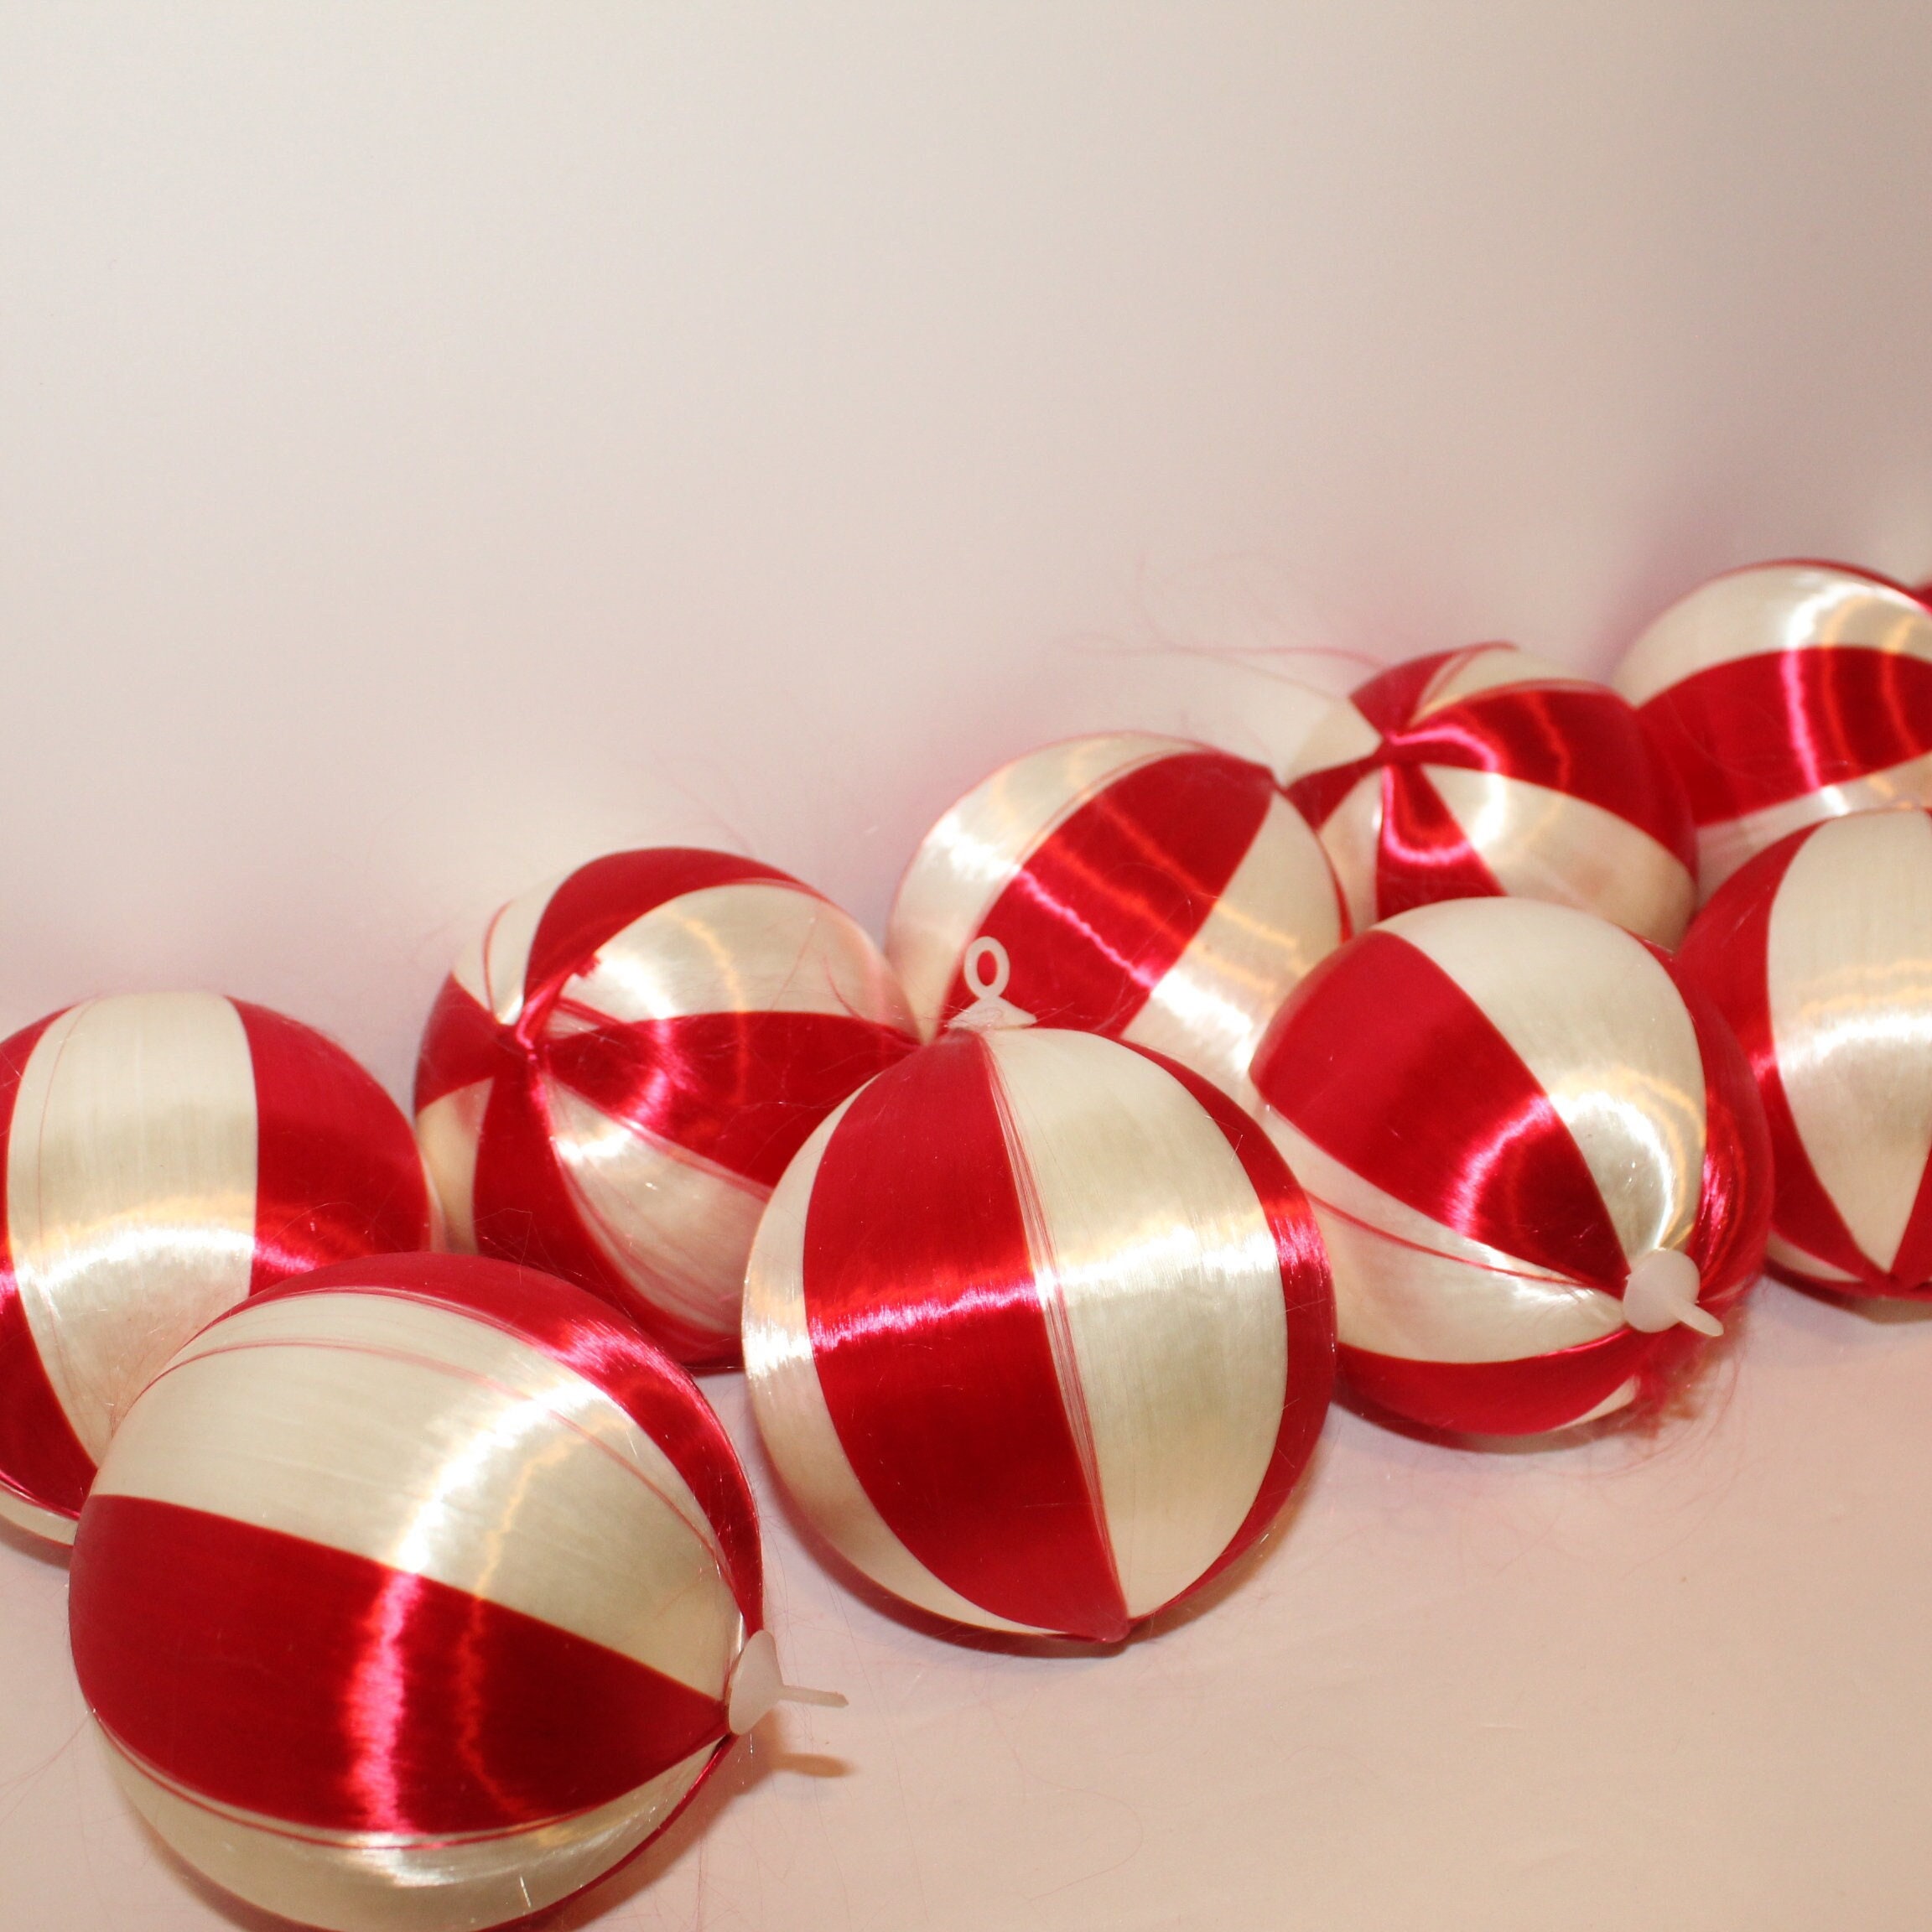 Elf Bodies - Red Tinted 25mm Spun Cotton Balls, 12 Pcs.